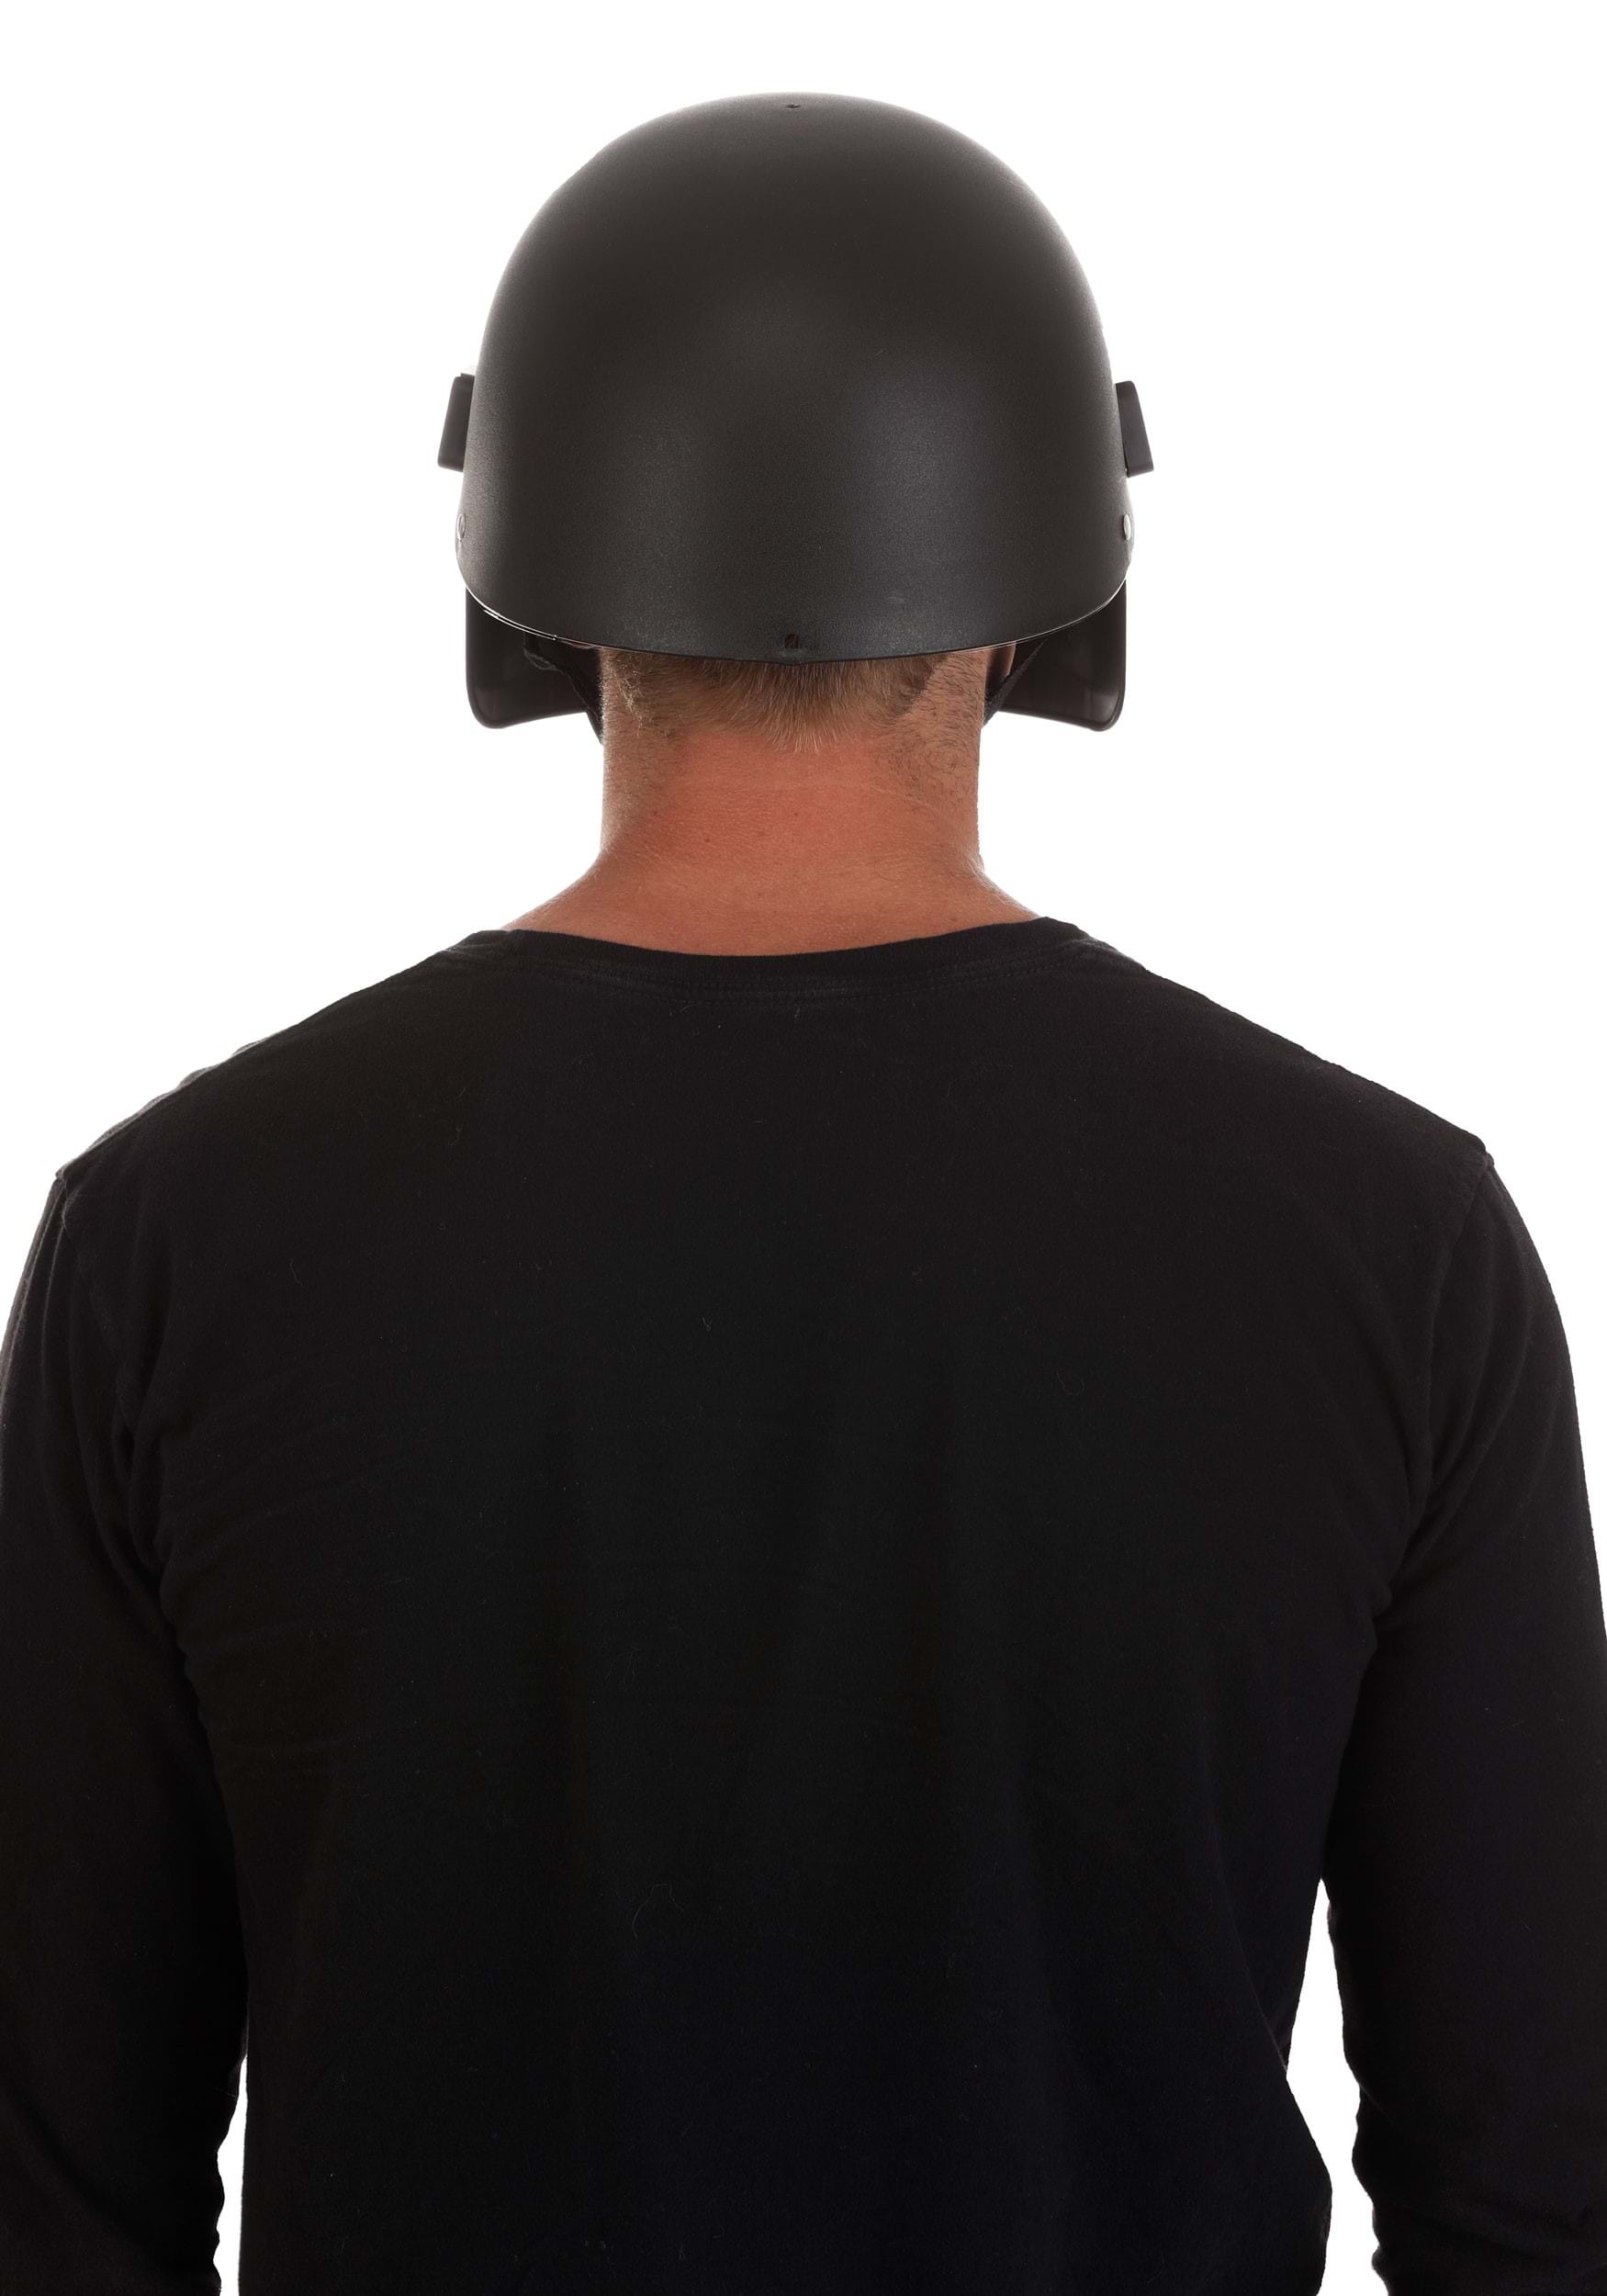 SWAT Costume Visor Adult Helmet